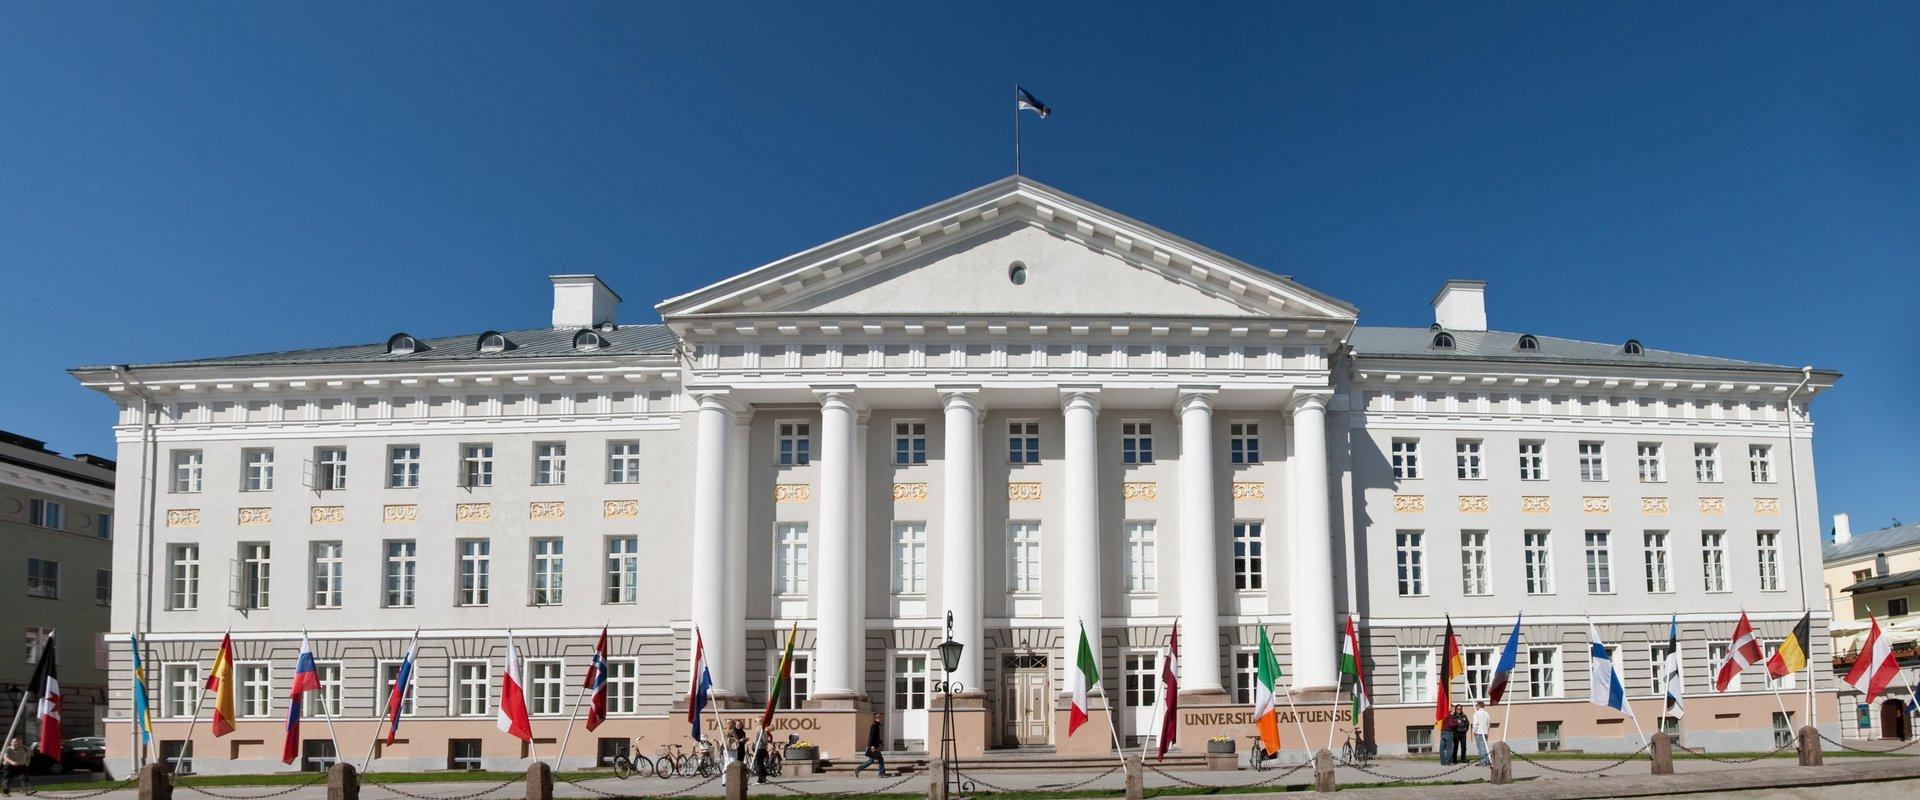 Yksi Tarton kiistattomista helmistä on Tarton yliopiston päärakennus – se rakennettiin vuosina 1804–1809 yliopiston arkkitehdin Johann Wilhelm Krausen